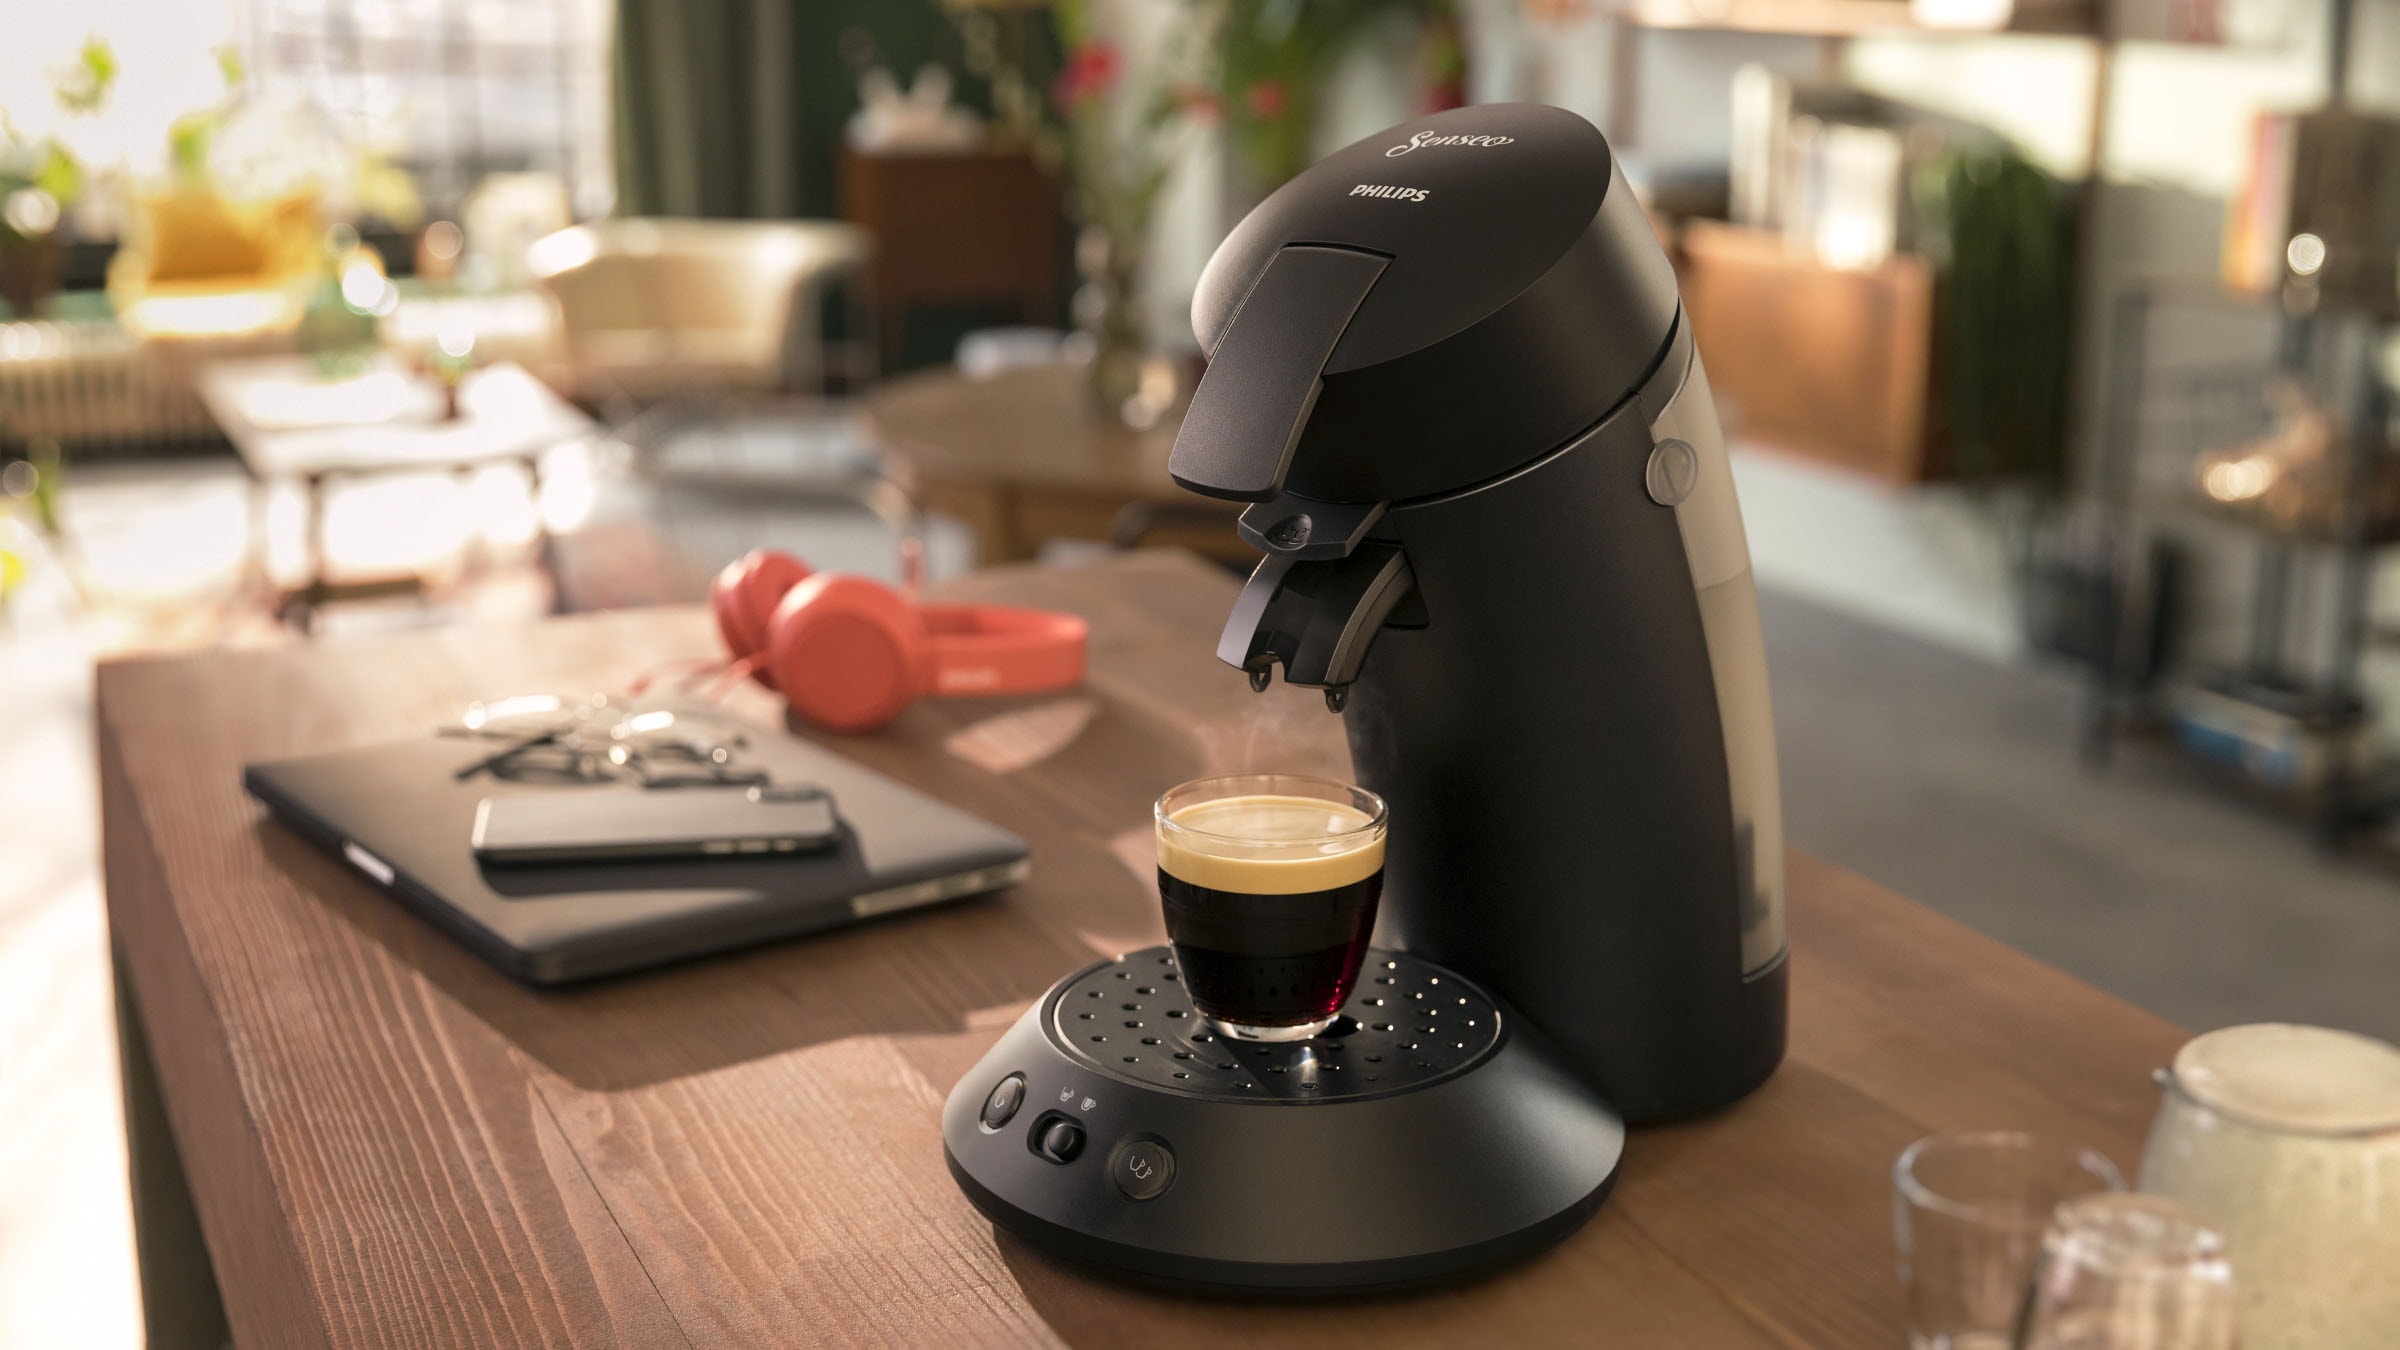 Philips Senseo Kaffeepadmaschine »Original Plus CSA 210/60«, aus 28% recyceltem  Plastik und mit 2 Kaffeespezialitäten, mattschwarz online kaufen